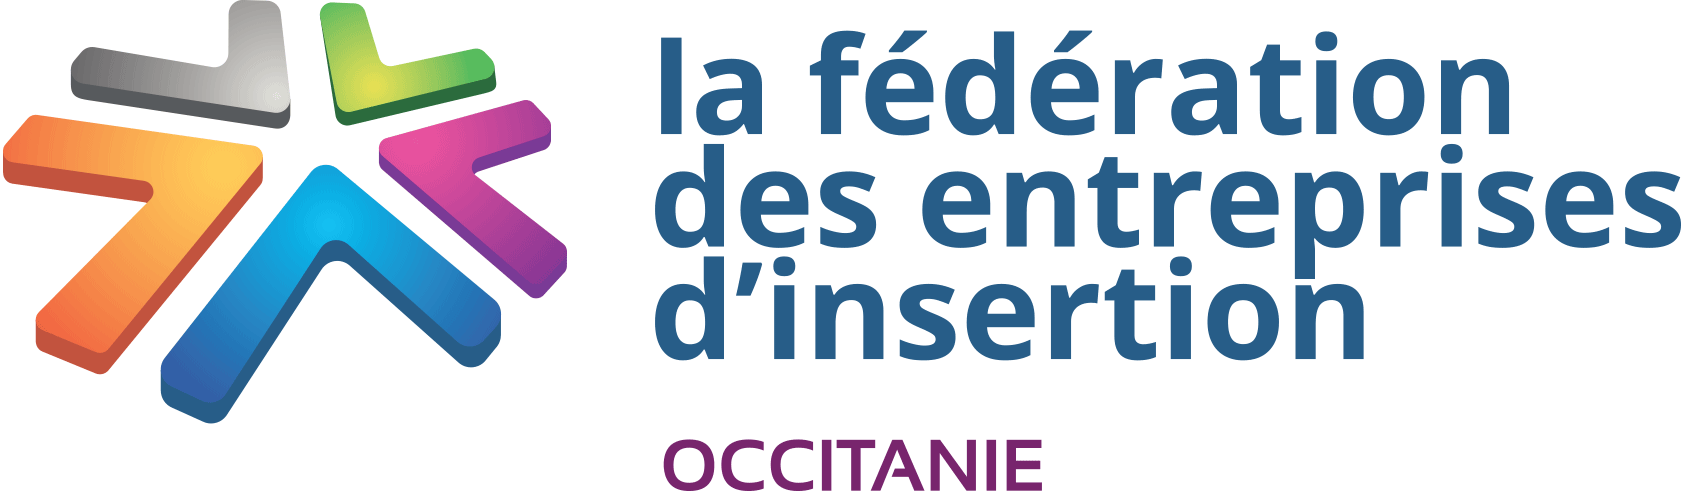 Airelle - Logo partenaire fédération des entreprises d'insertion